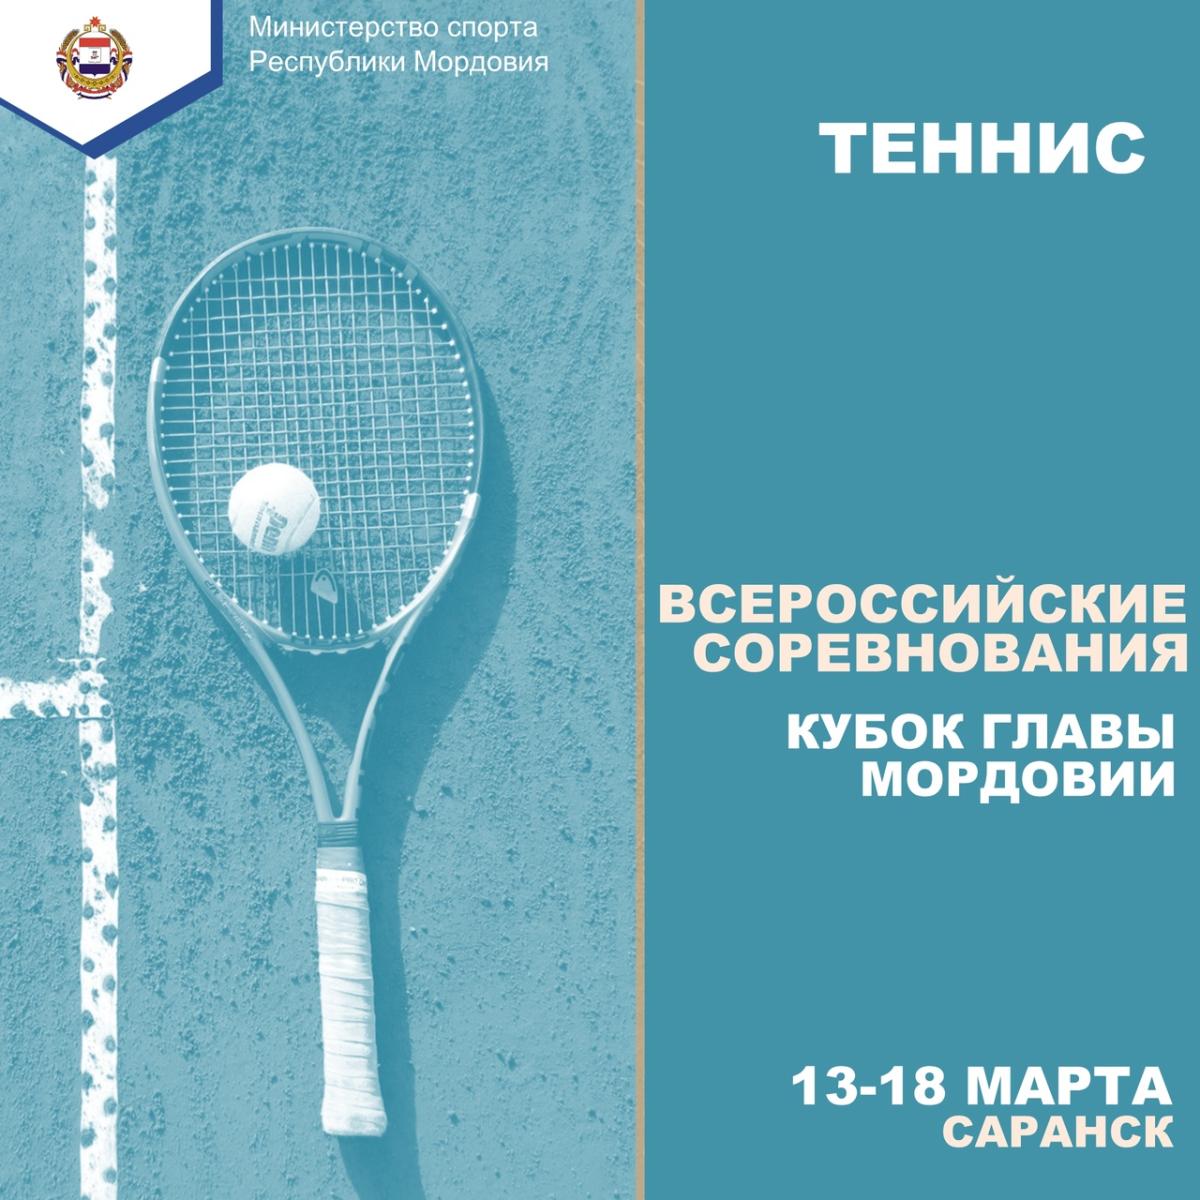 Всероссийские соревнования по теннису пройдут в Мордовии